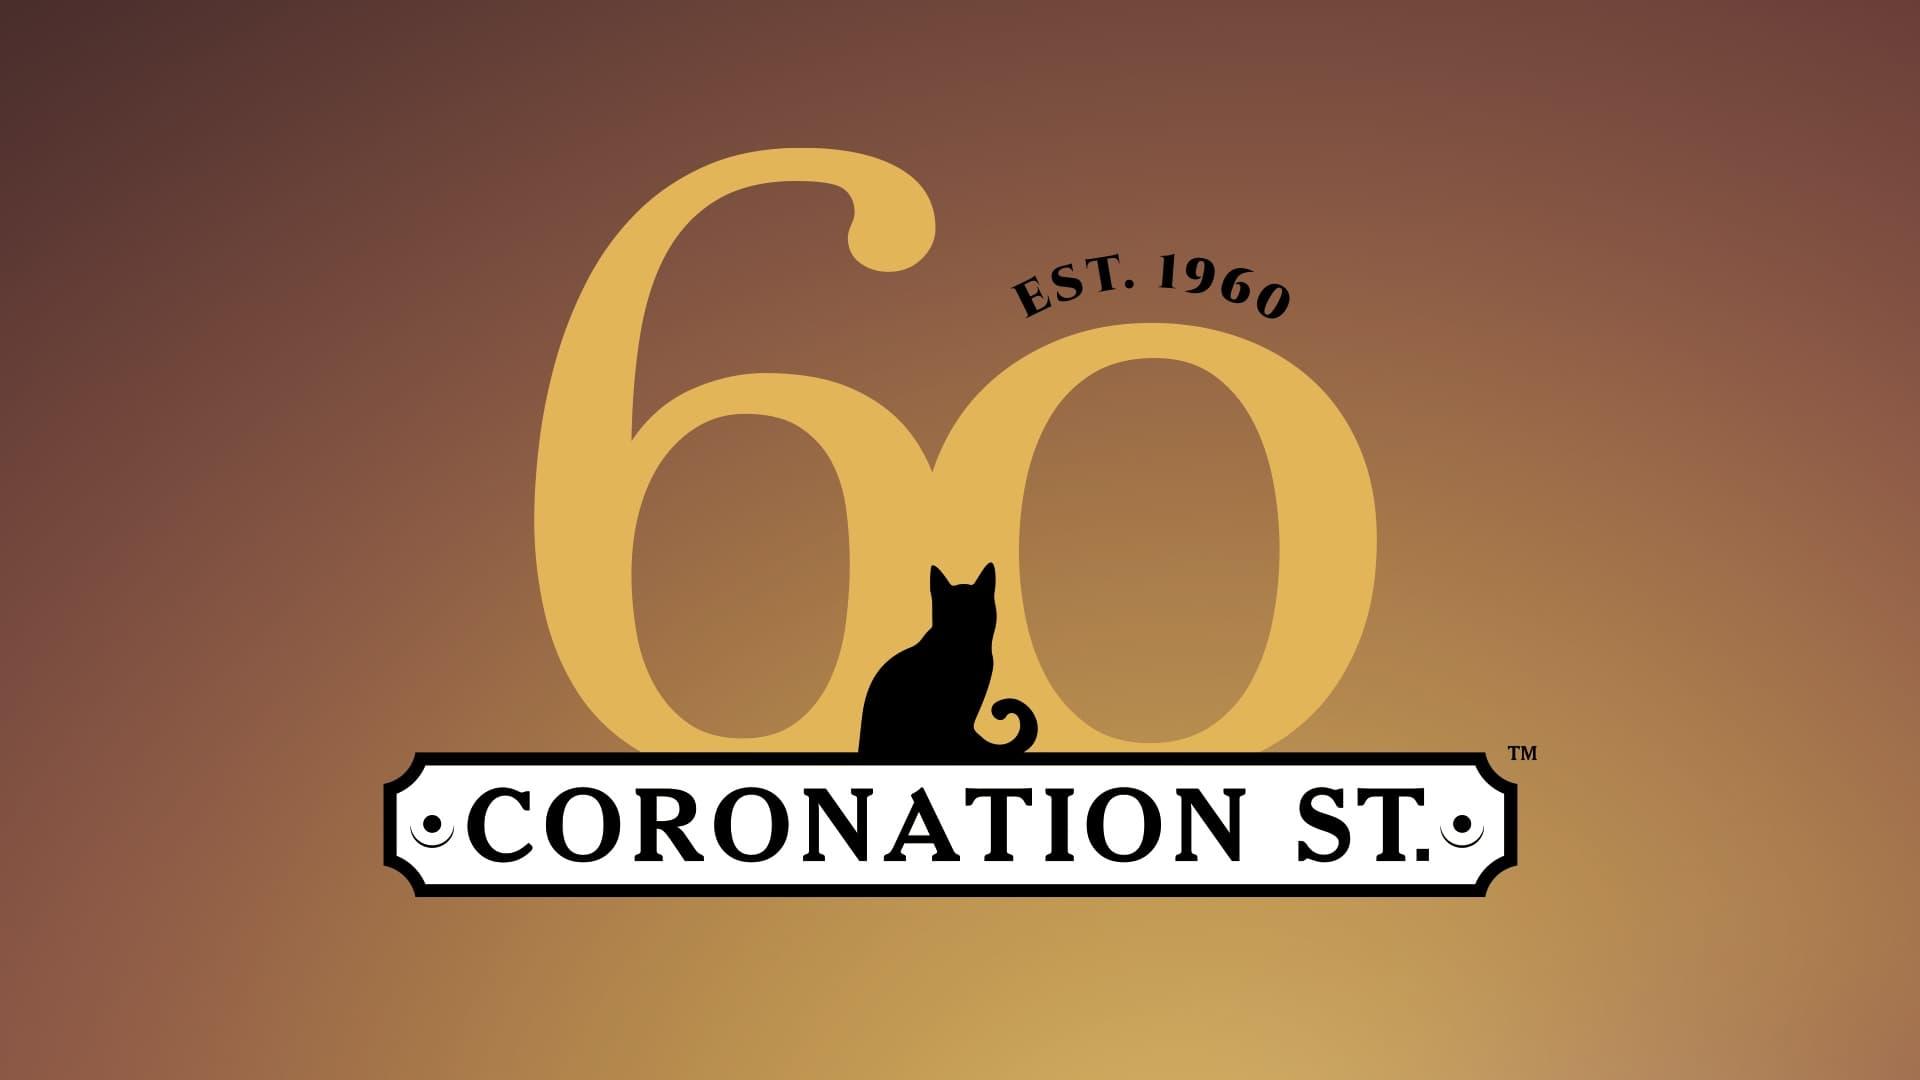 Coronation Street: 60 Unforgettable Years backdrop